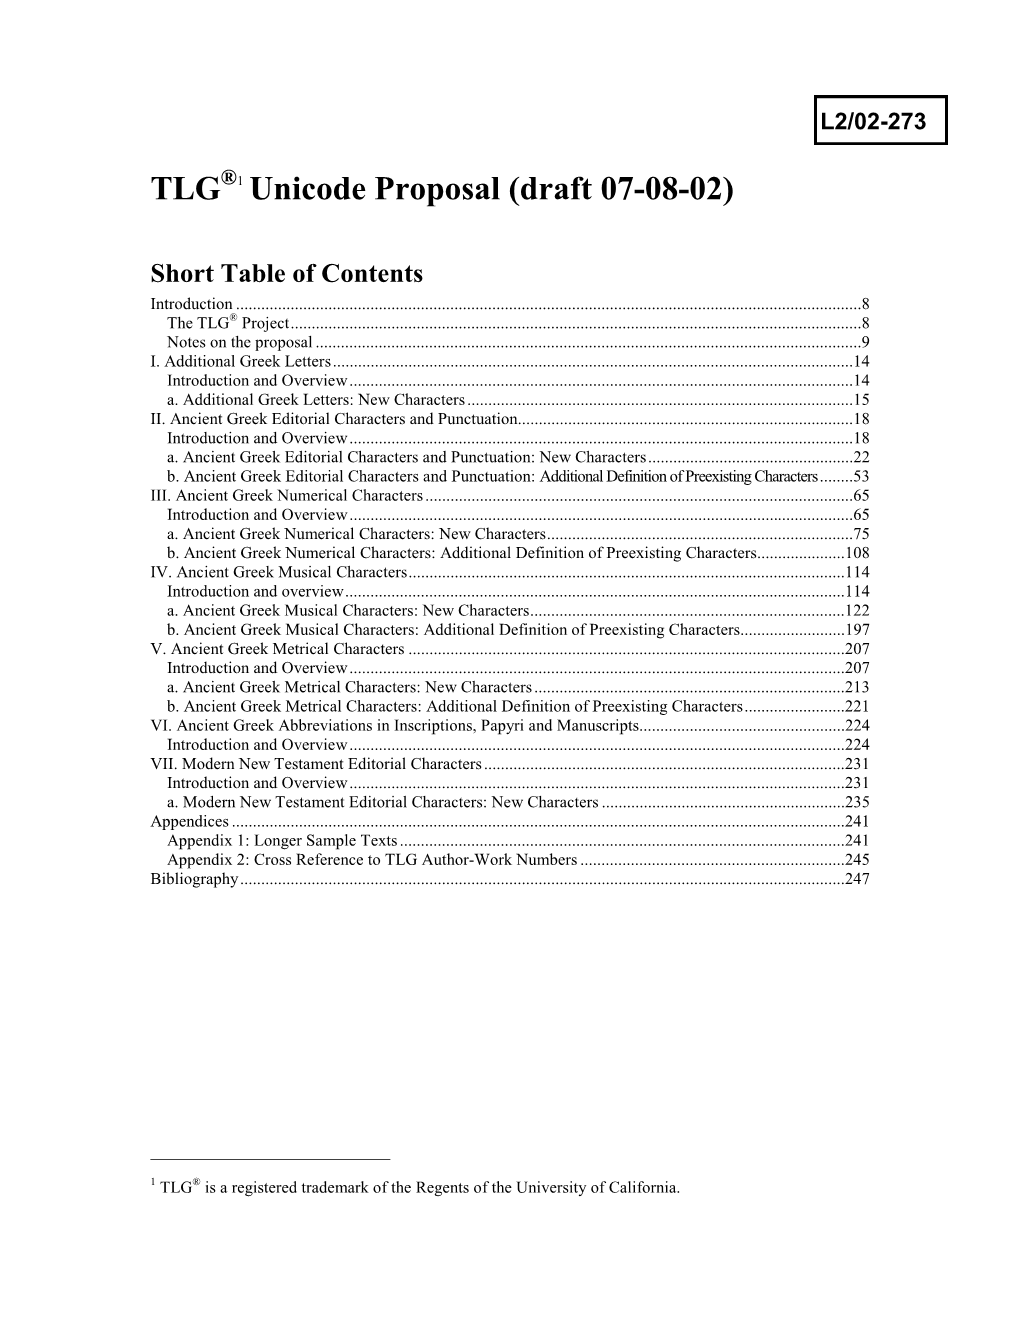 TLG ®1 Unicode Proposal (Draft 07-08-02)